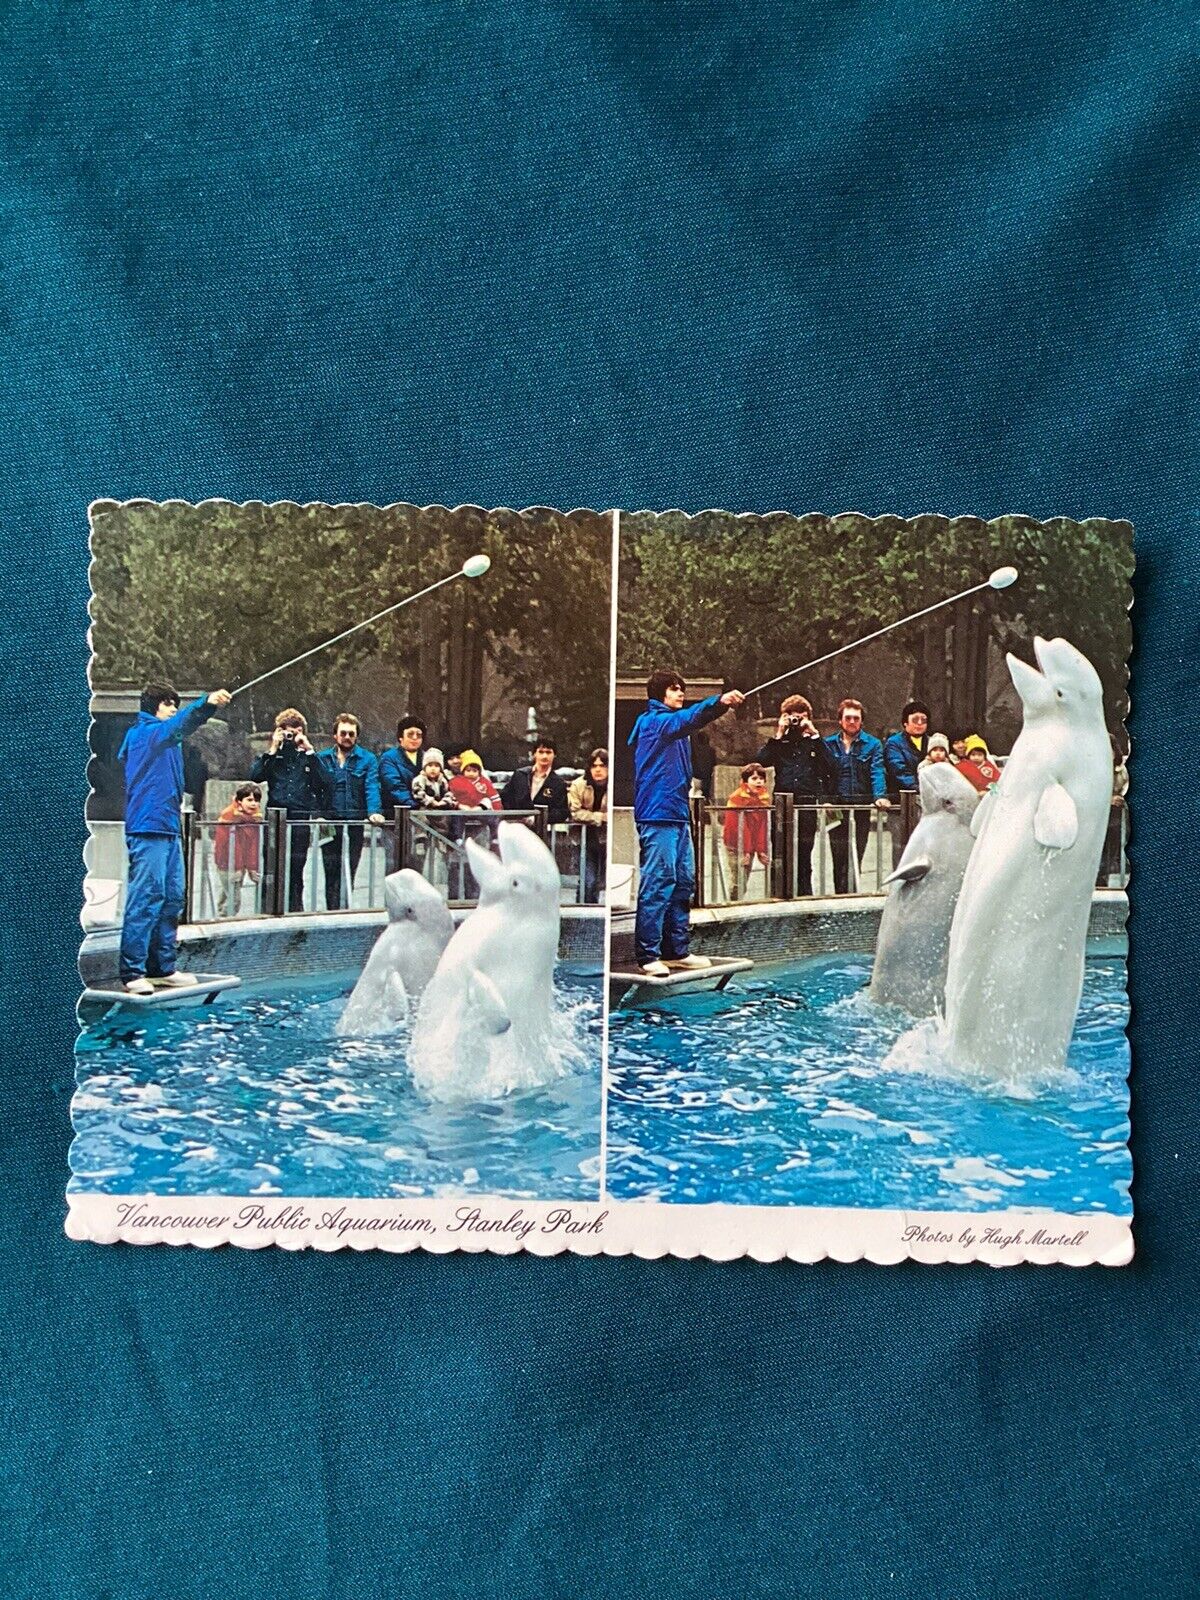 1983 Vintage Postcard Beluga Whales Performing Vancouver Public Aquarium B.C